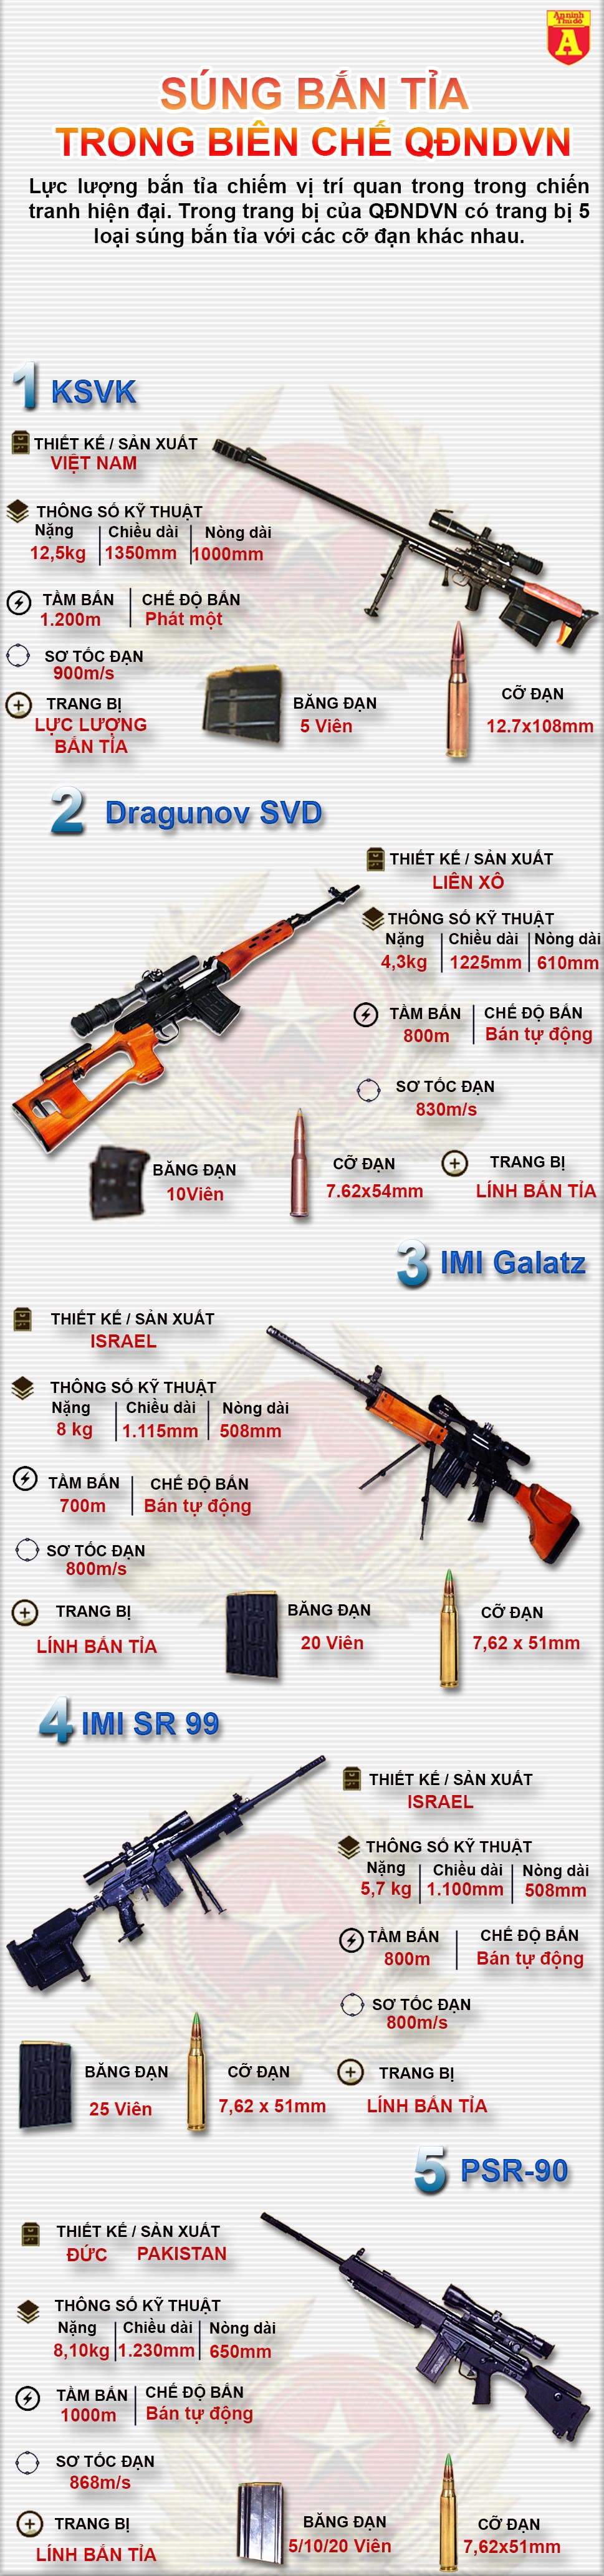 [Infographic] Tìm hiểu các loại súng bắn tỉa đang biên chế trong QĐNDVN ảnh 2